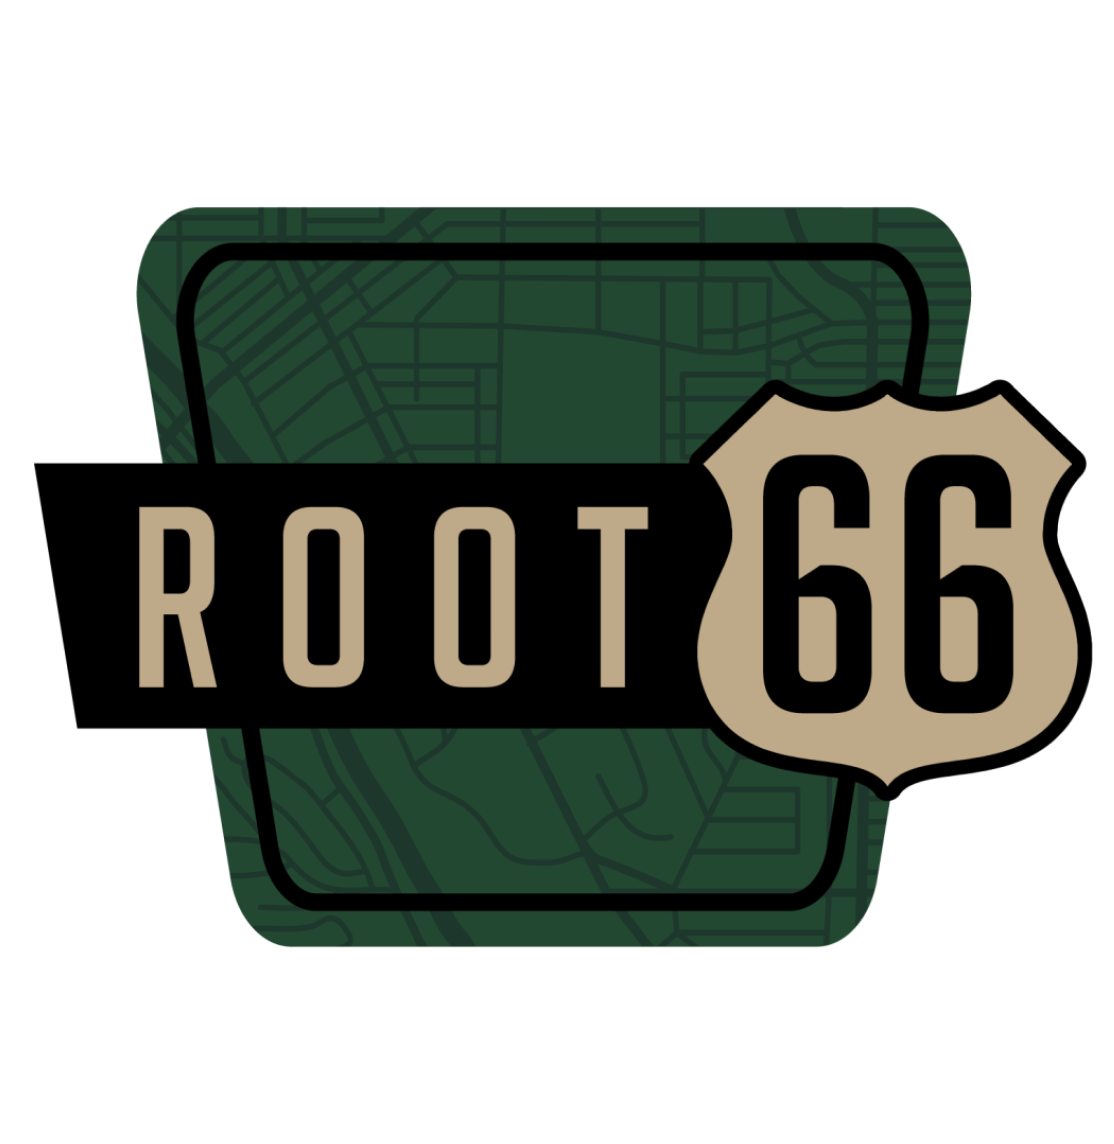 Root 66 Dogtown logo